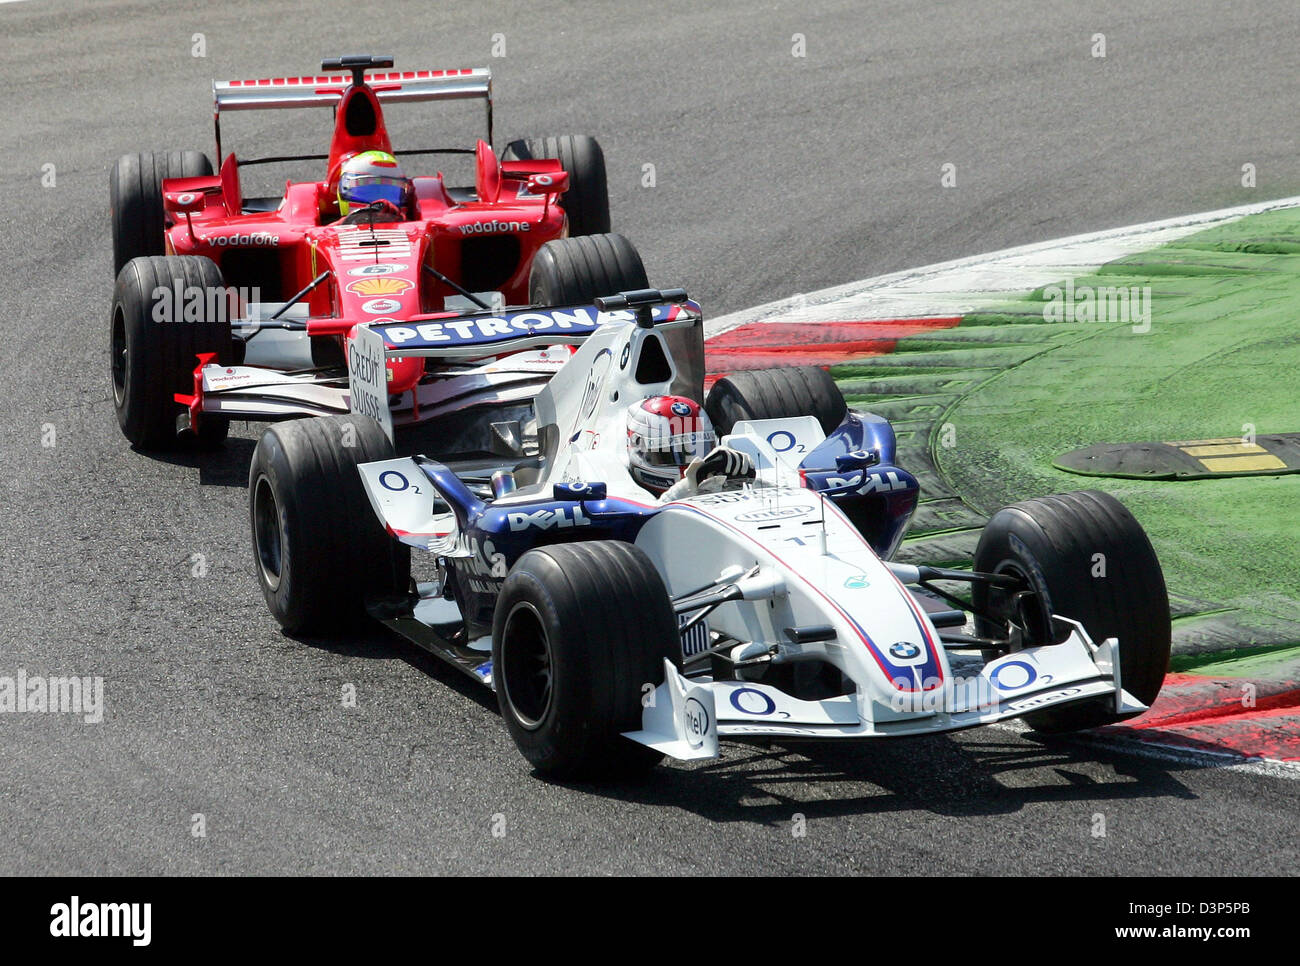 Il polacco pilota di Formula Uno Robert Kubica (BMW Sauber/R) comanda davanti al brasiliano Felipe Massa (Ferrari) durante il Gran Premio d'Italia in pista a Monza, Italia, Domenica, 10 settembre 2006. Foto: Gero Breloer Foto Stock